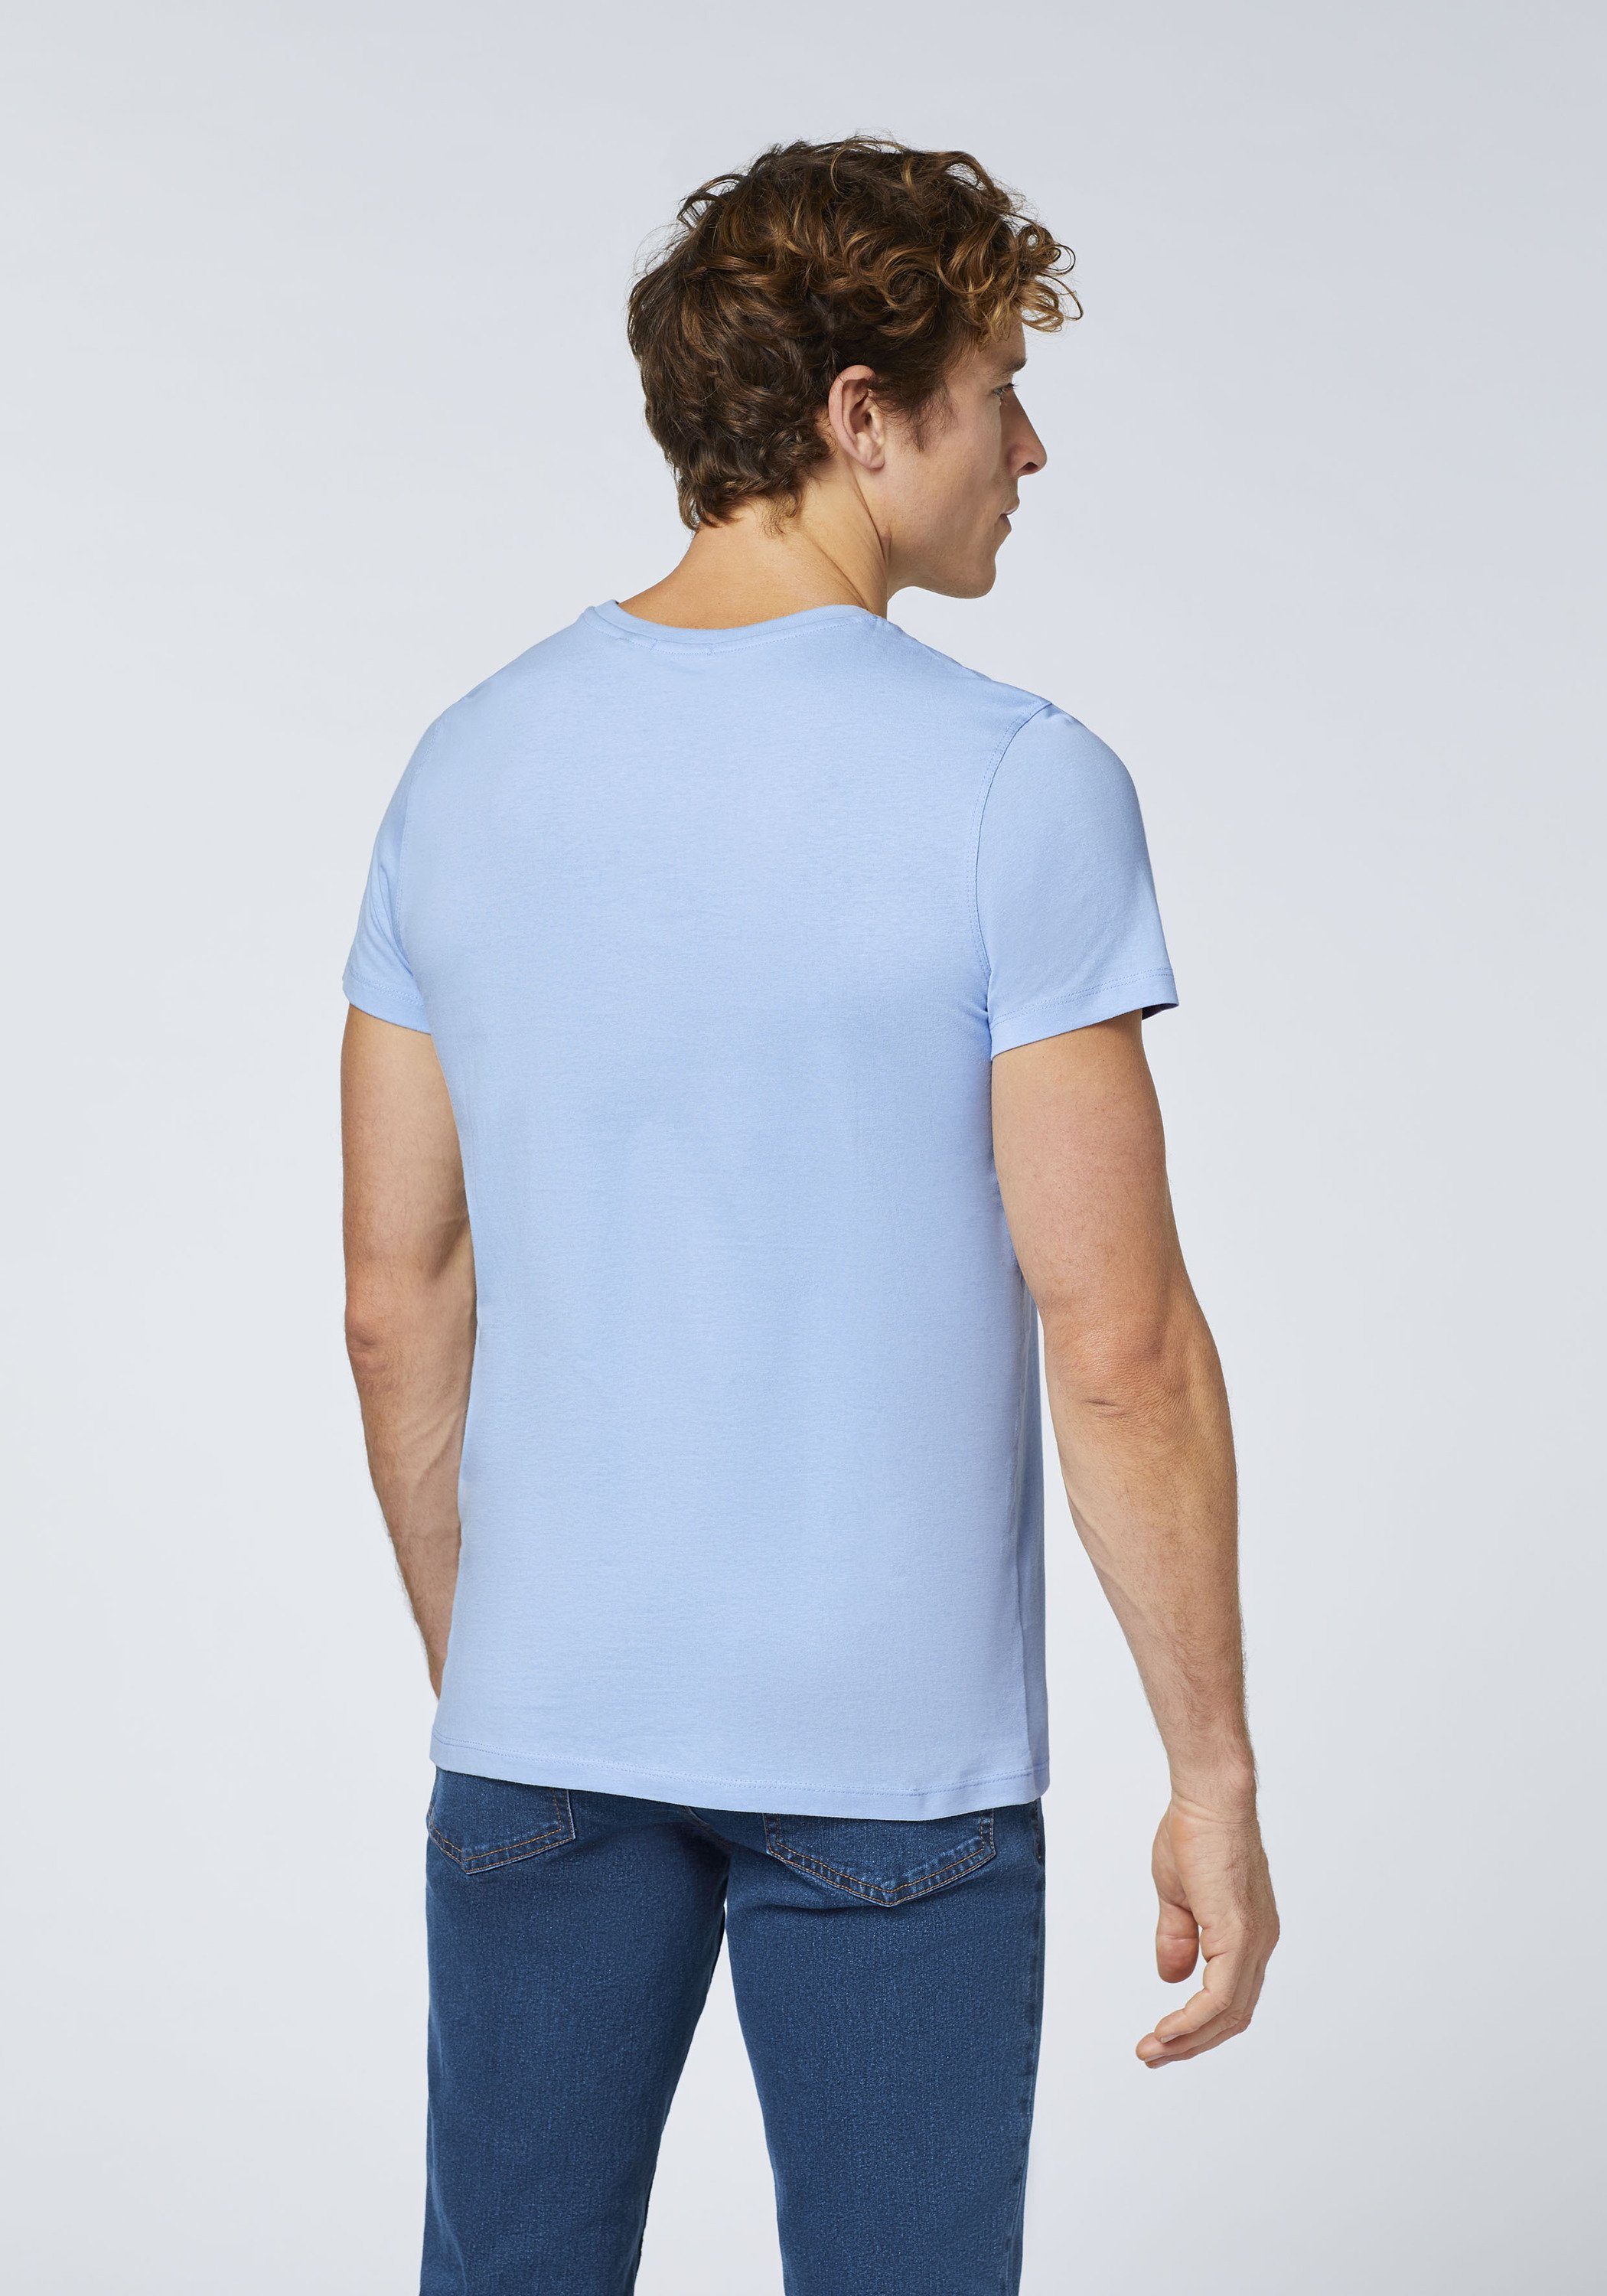 16-3922 Blue Brunnera T-Shirt mit 1 Label-Schriftzug Chiemsee Print-Shirt